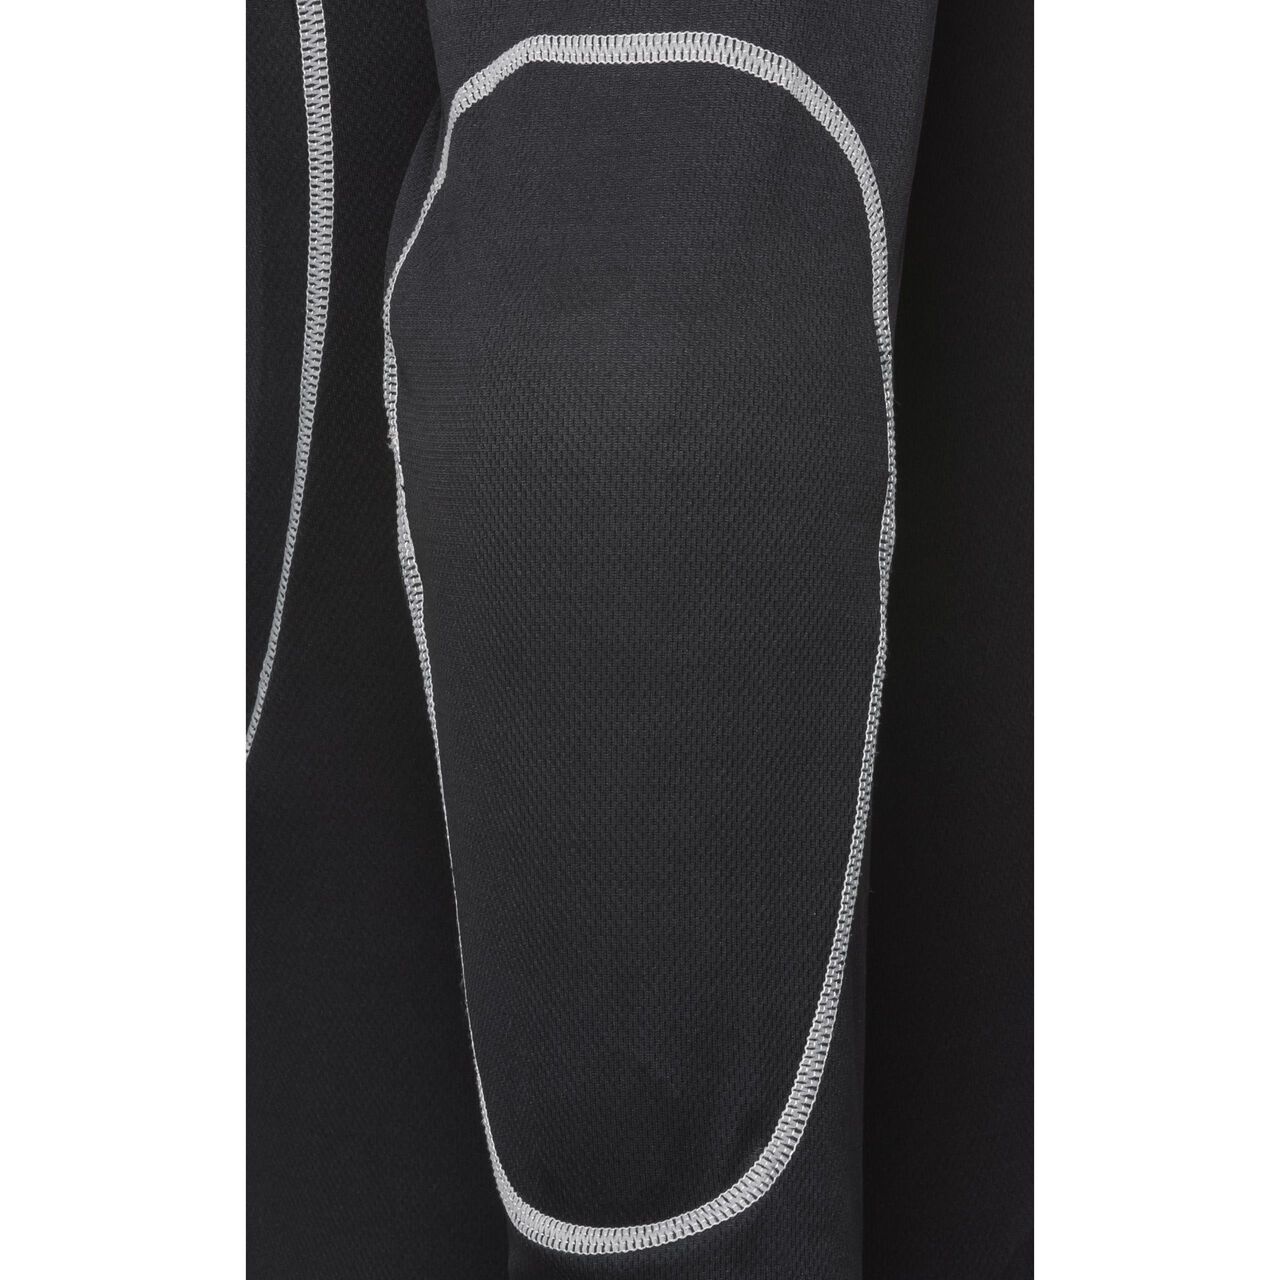 Unterziehjacke mit Gelenk- und Rückenprotektor 3.0 schwarz